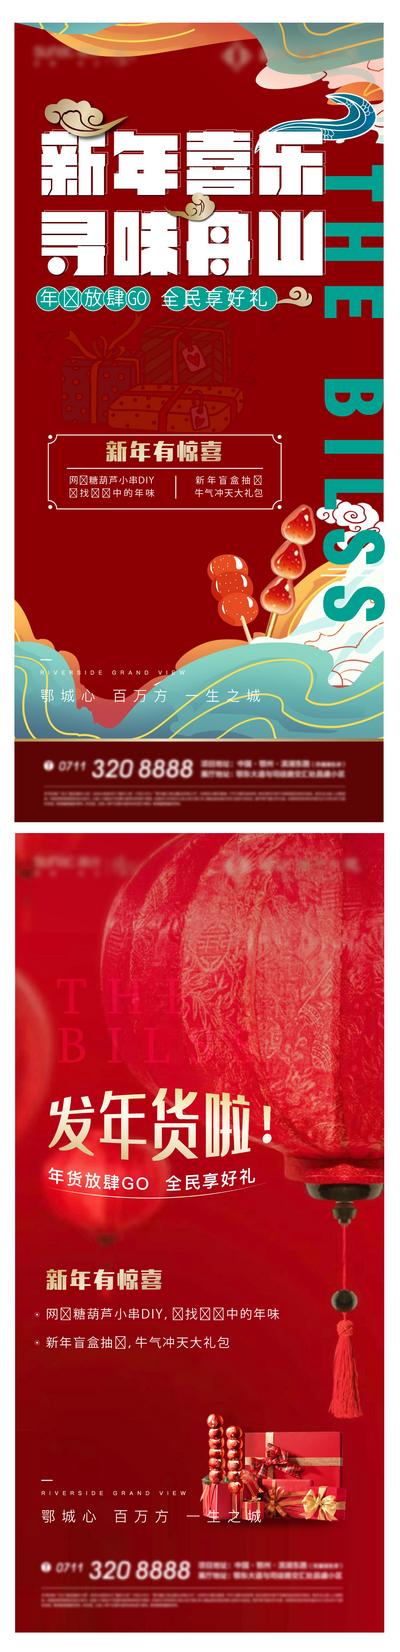 南门网 广告 海报 地产 年货 新年 活动